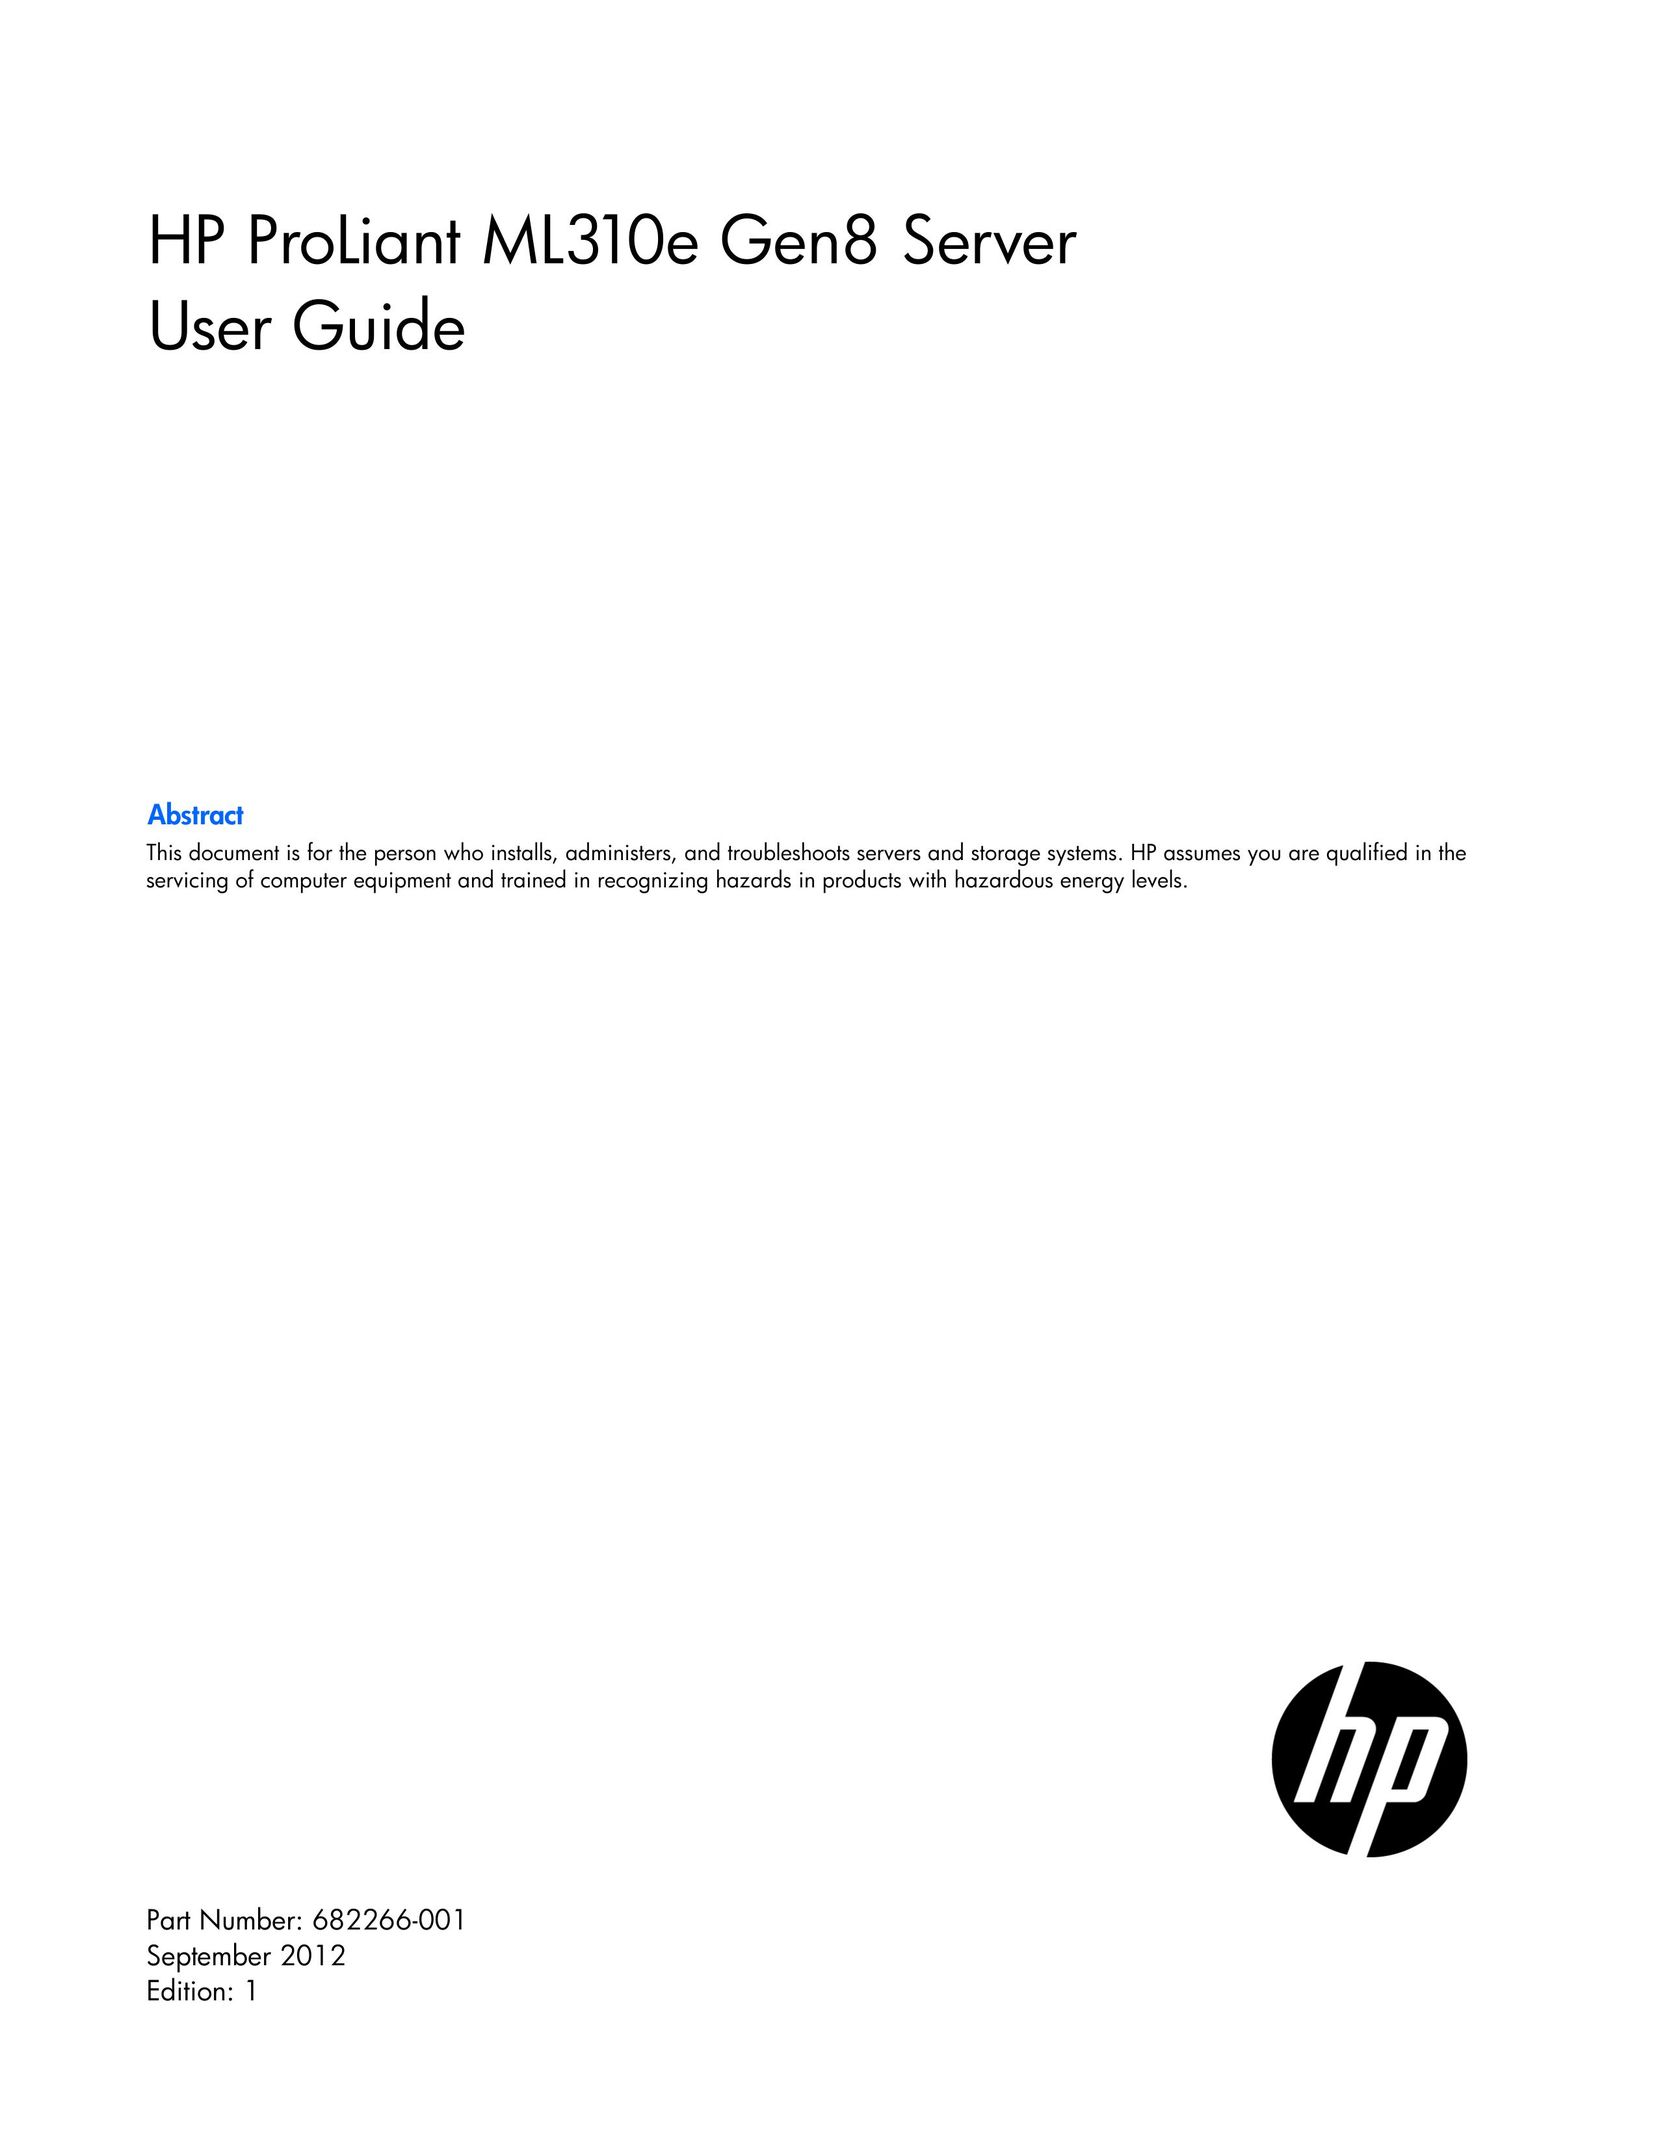 HP (Hewlett-Packard) 686235-S01 Server User Manual